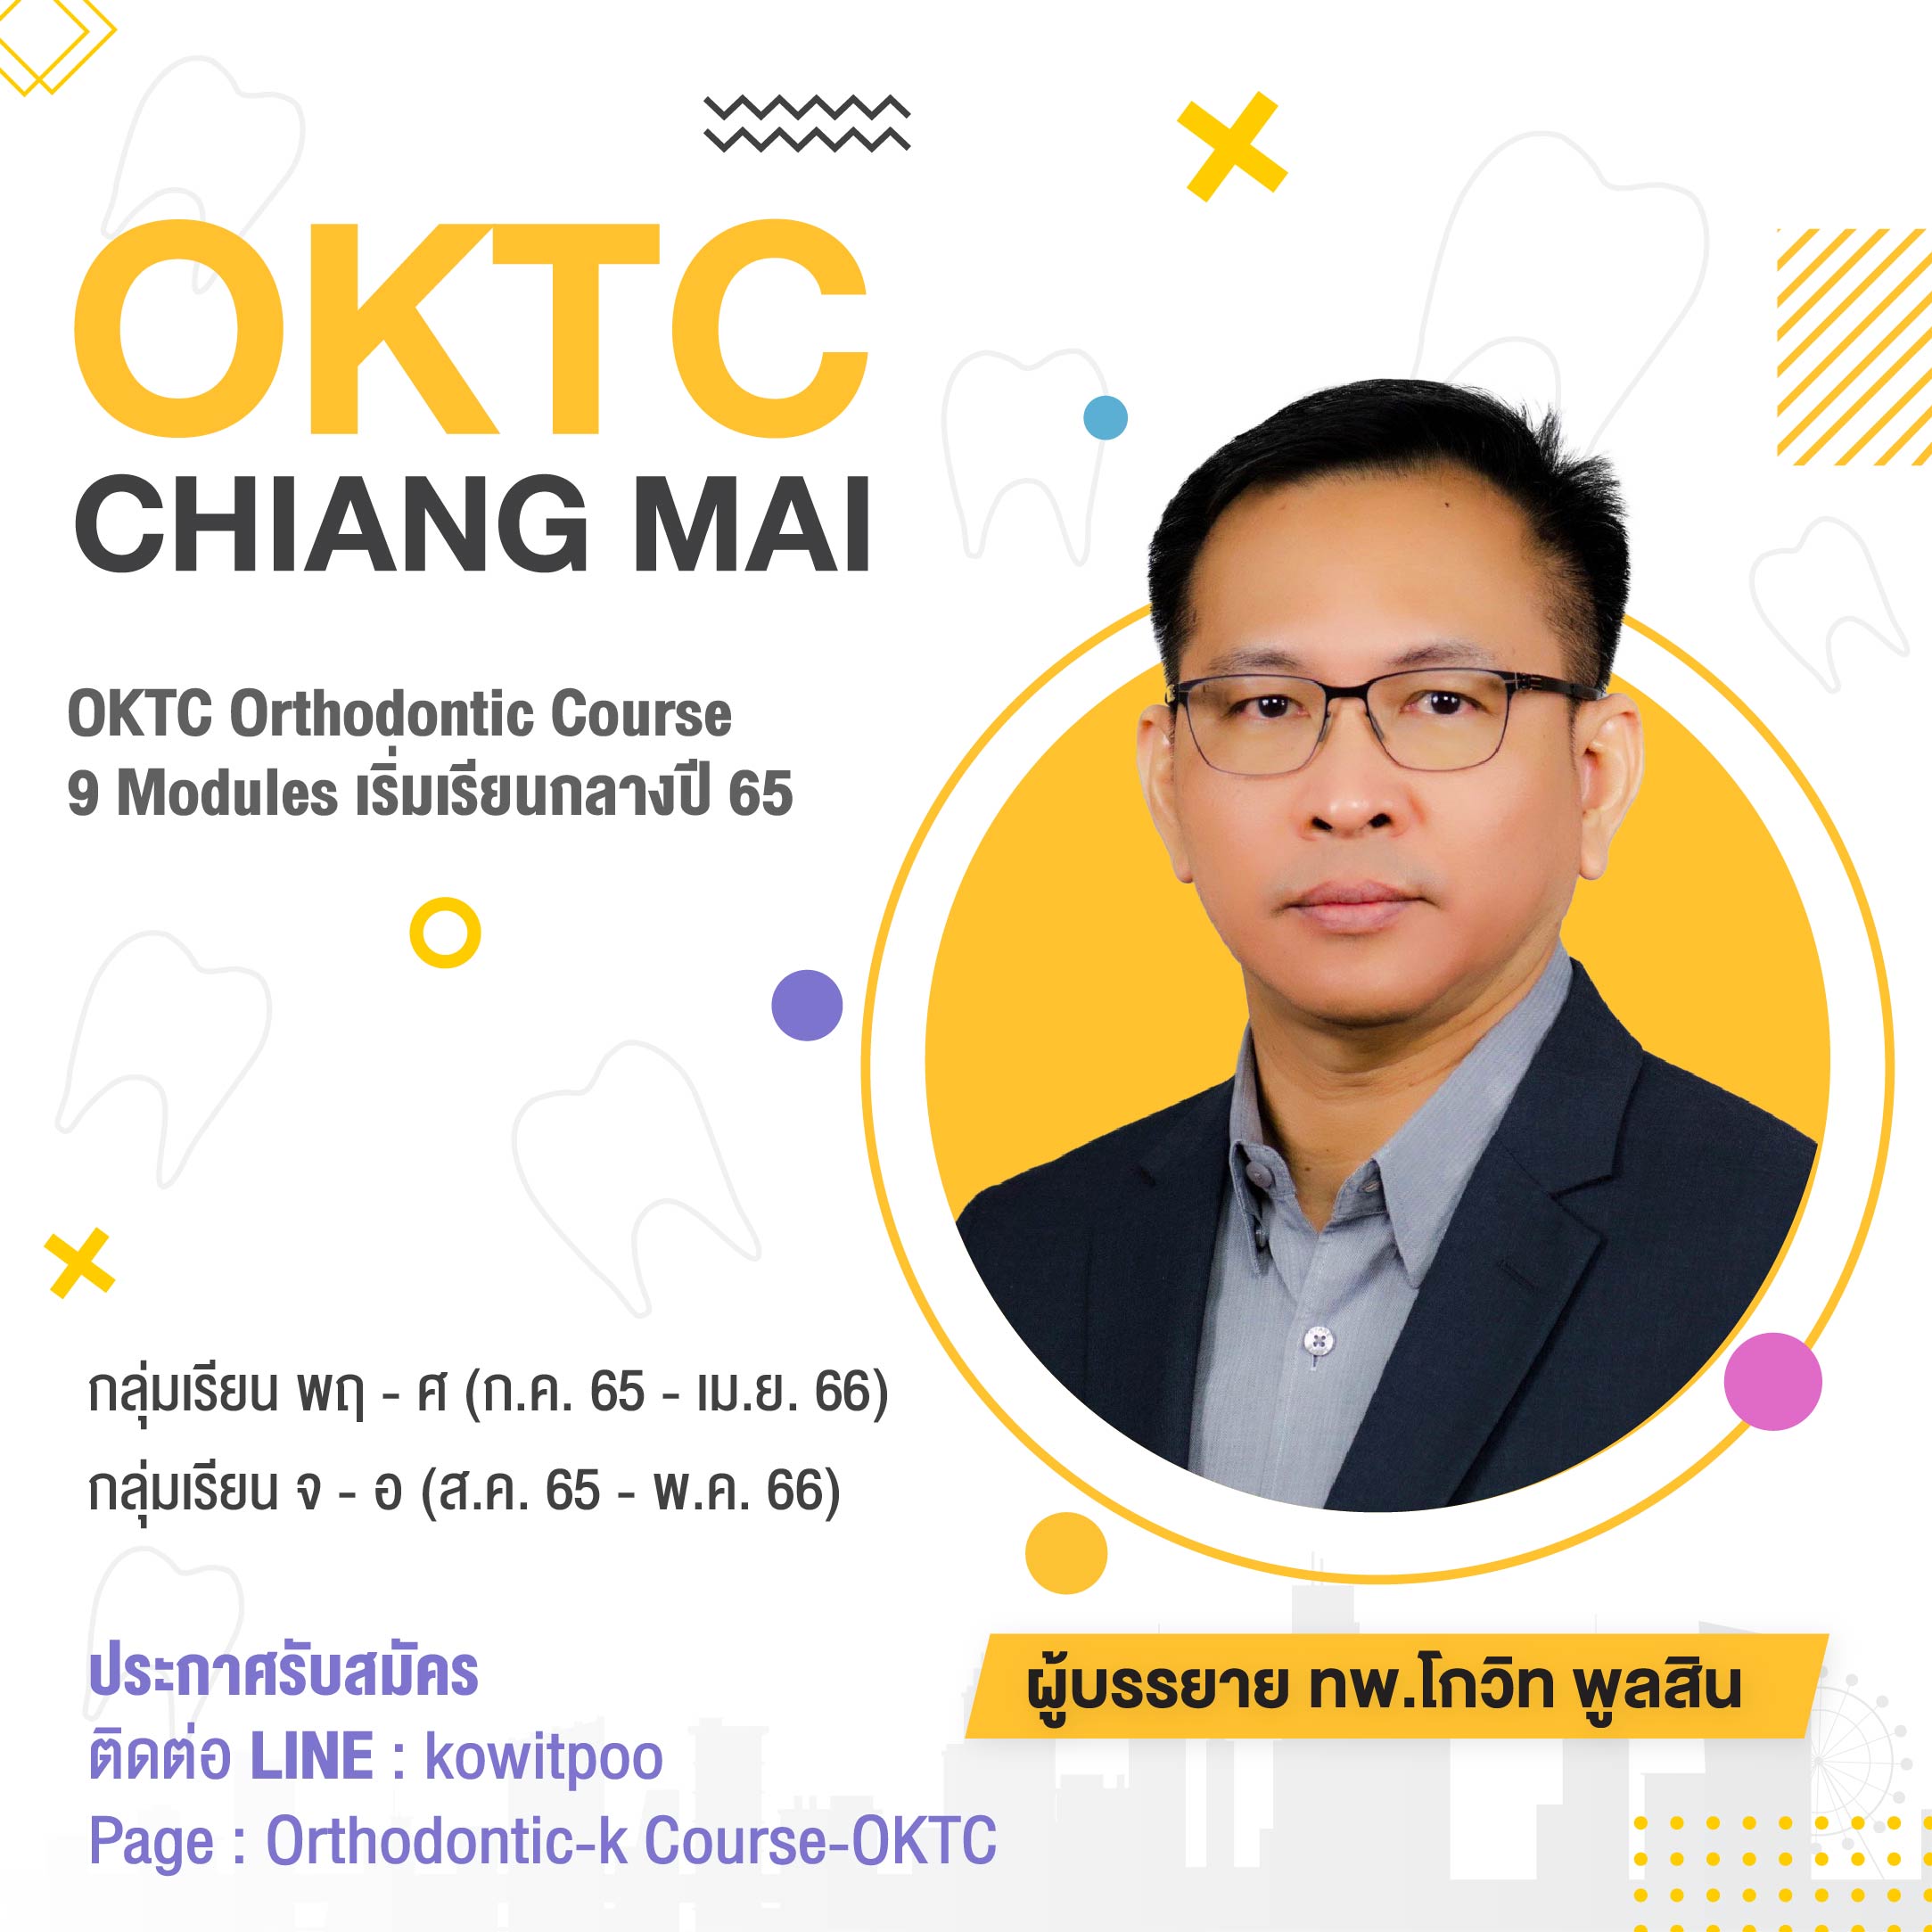 OKTC Chiang Mai